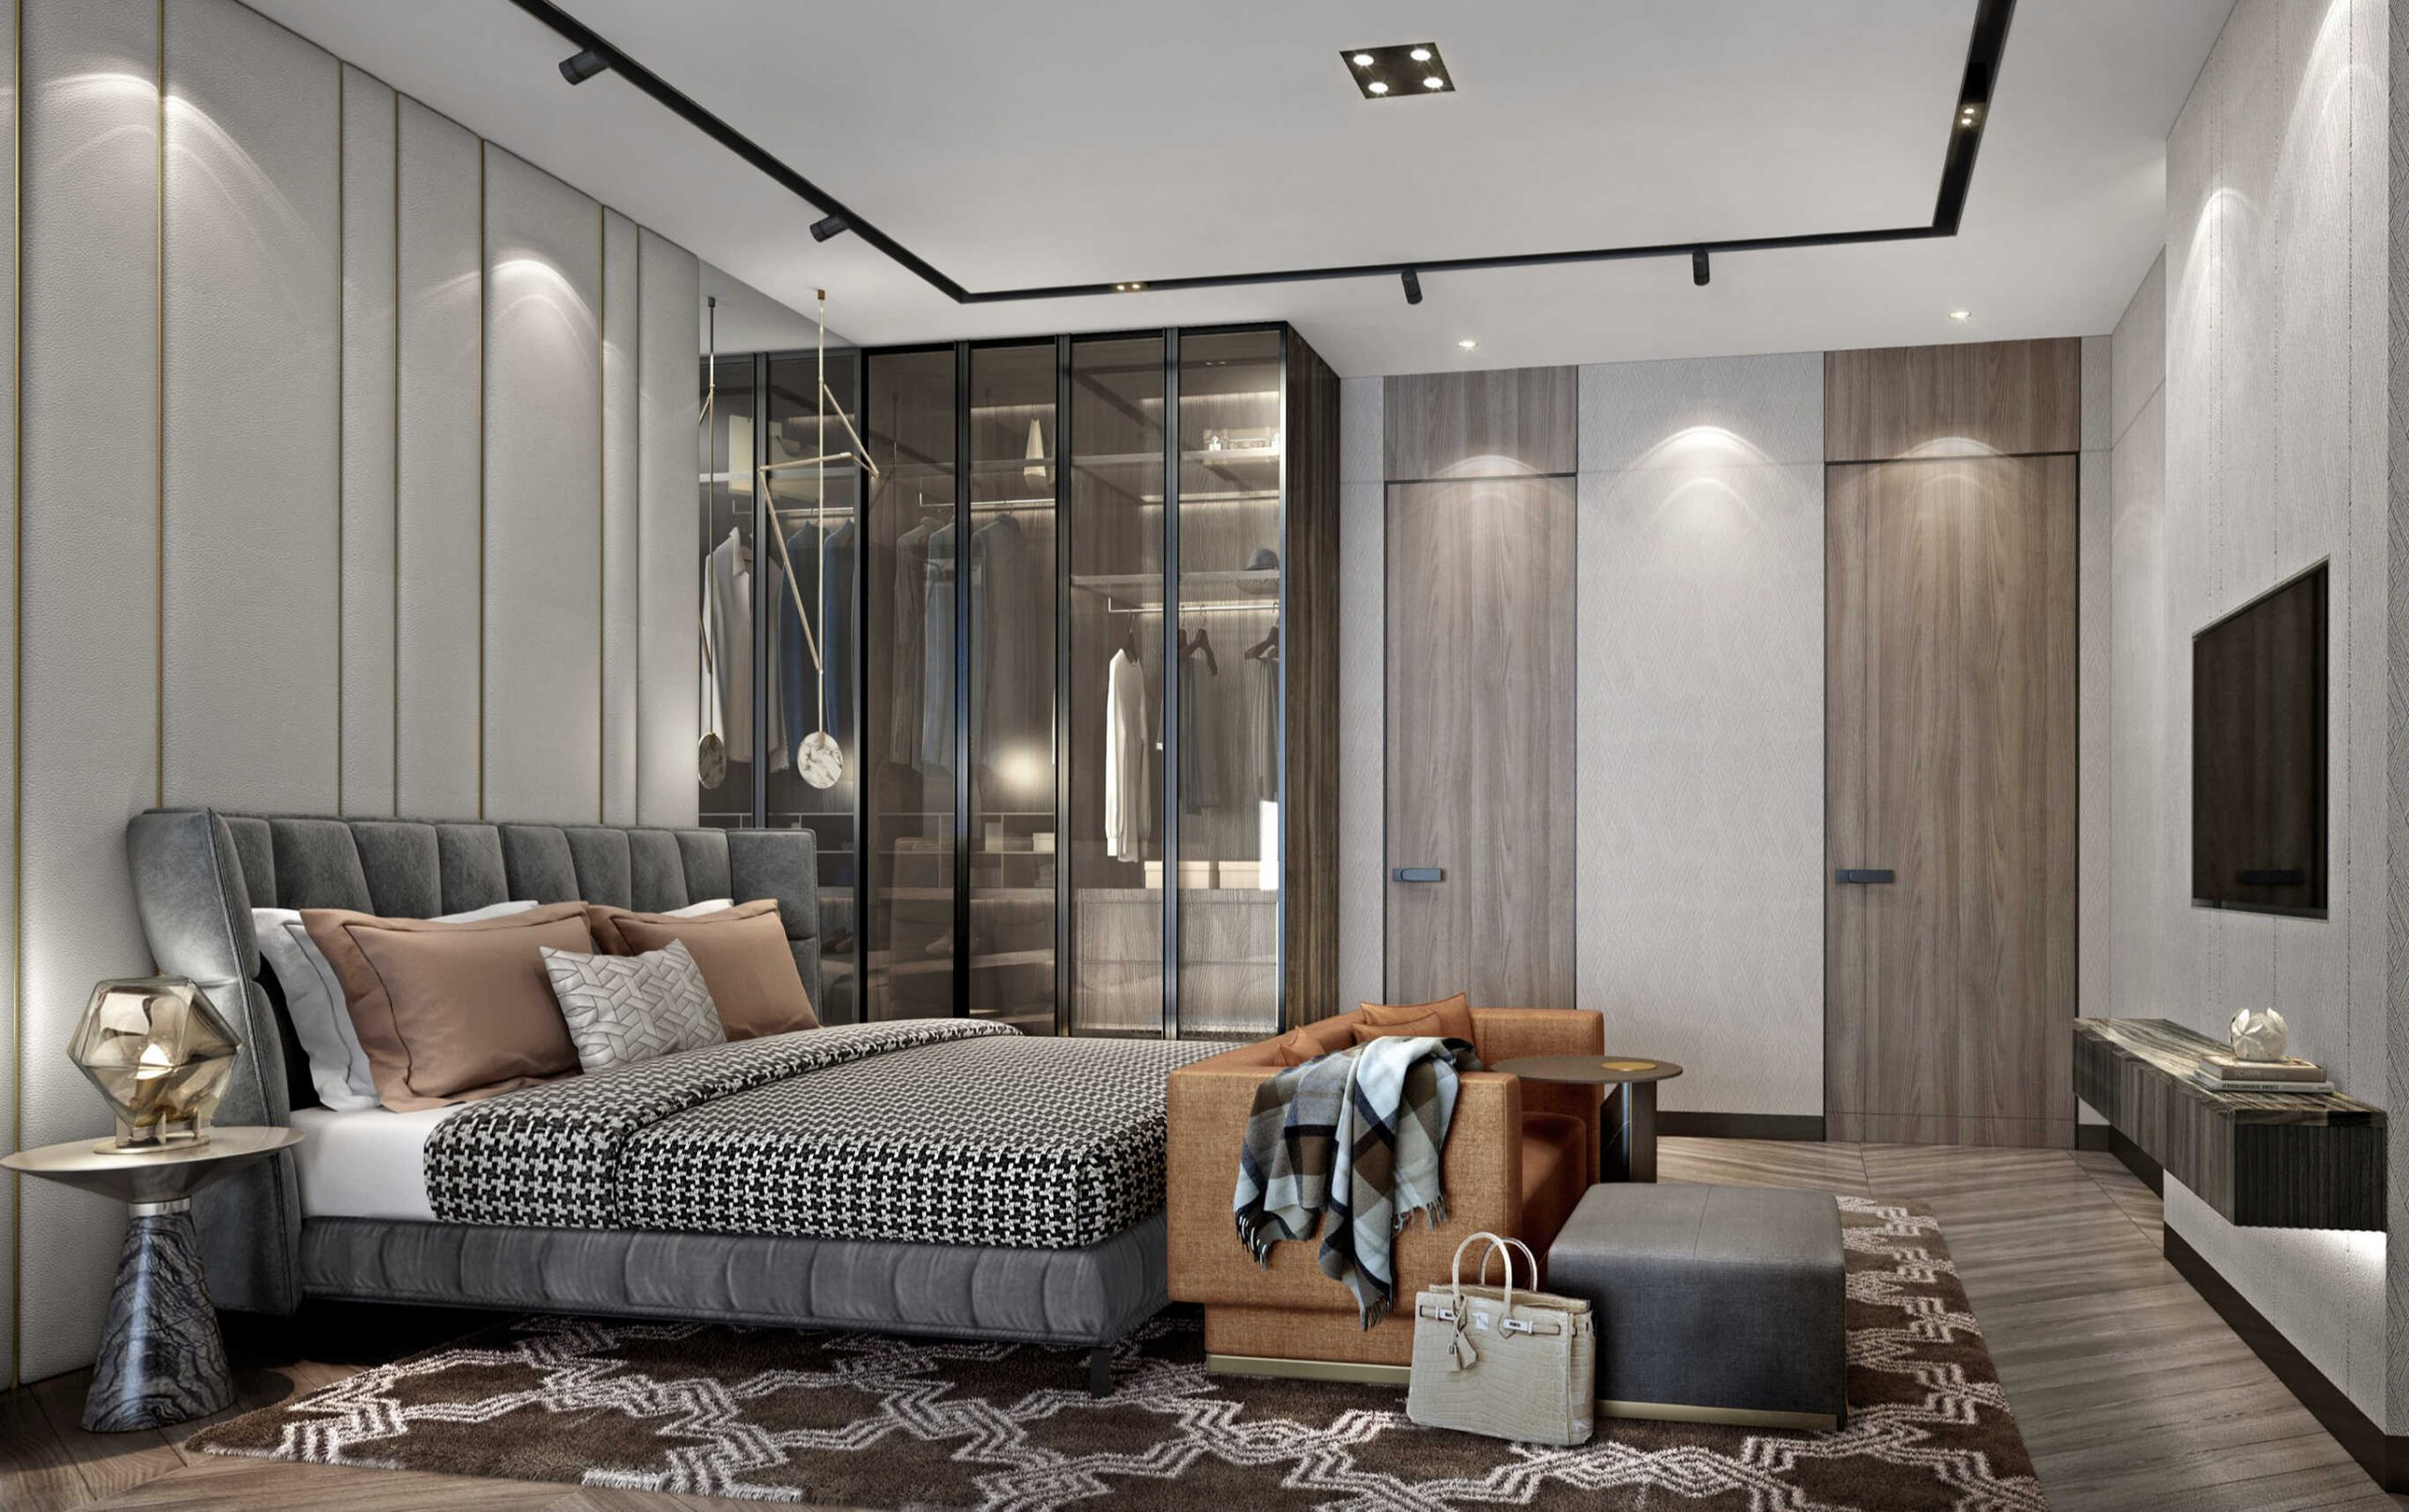 Phòng ngủ Mẫu C - Rustic Luxury